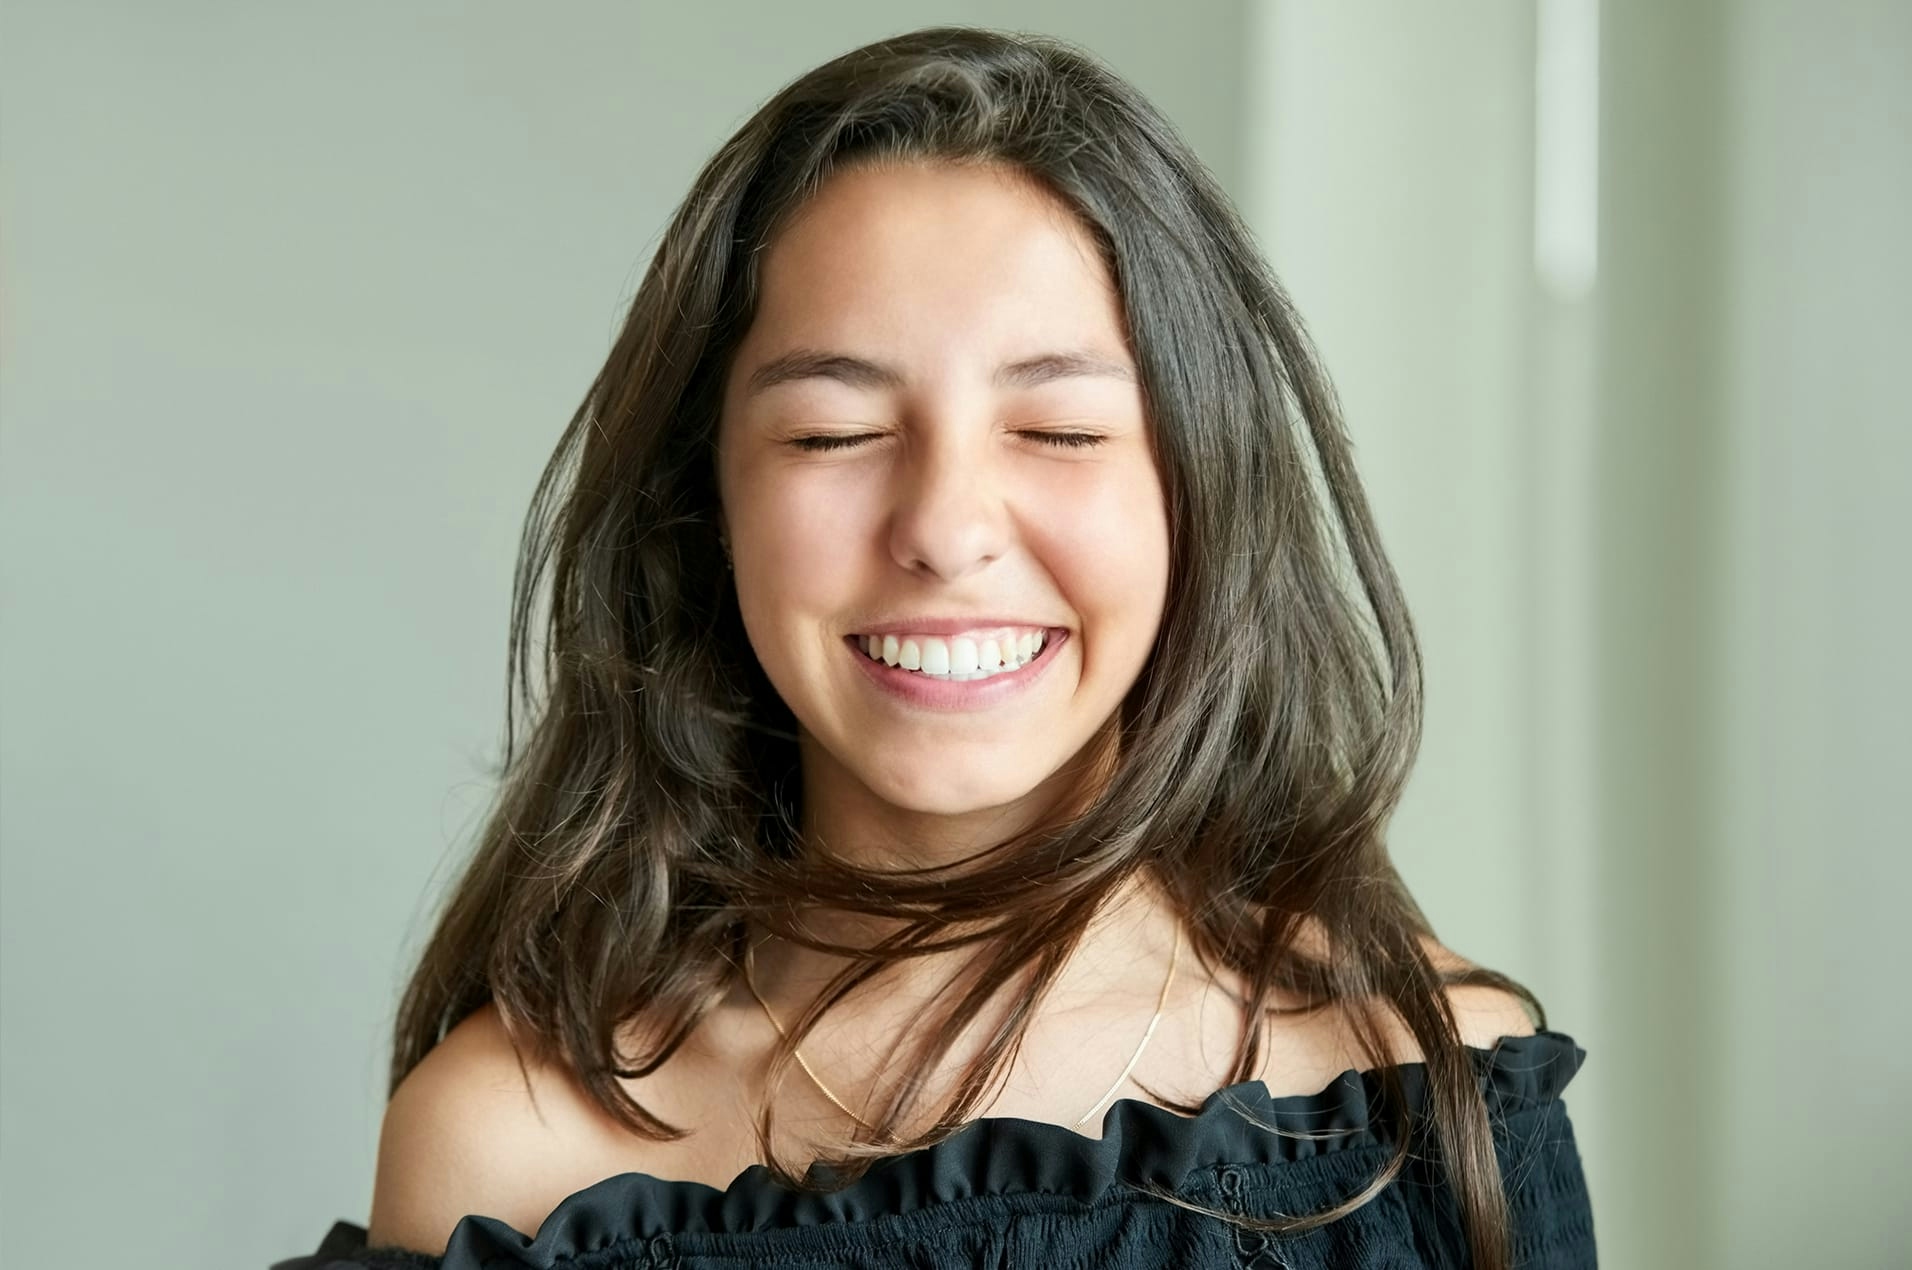 brunette teen smiling